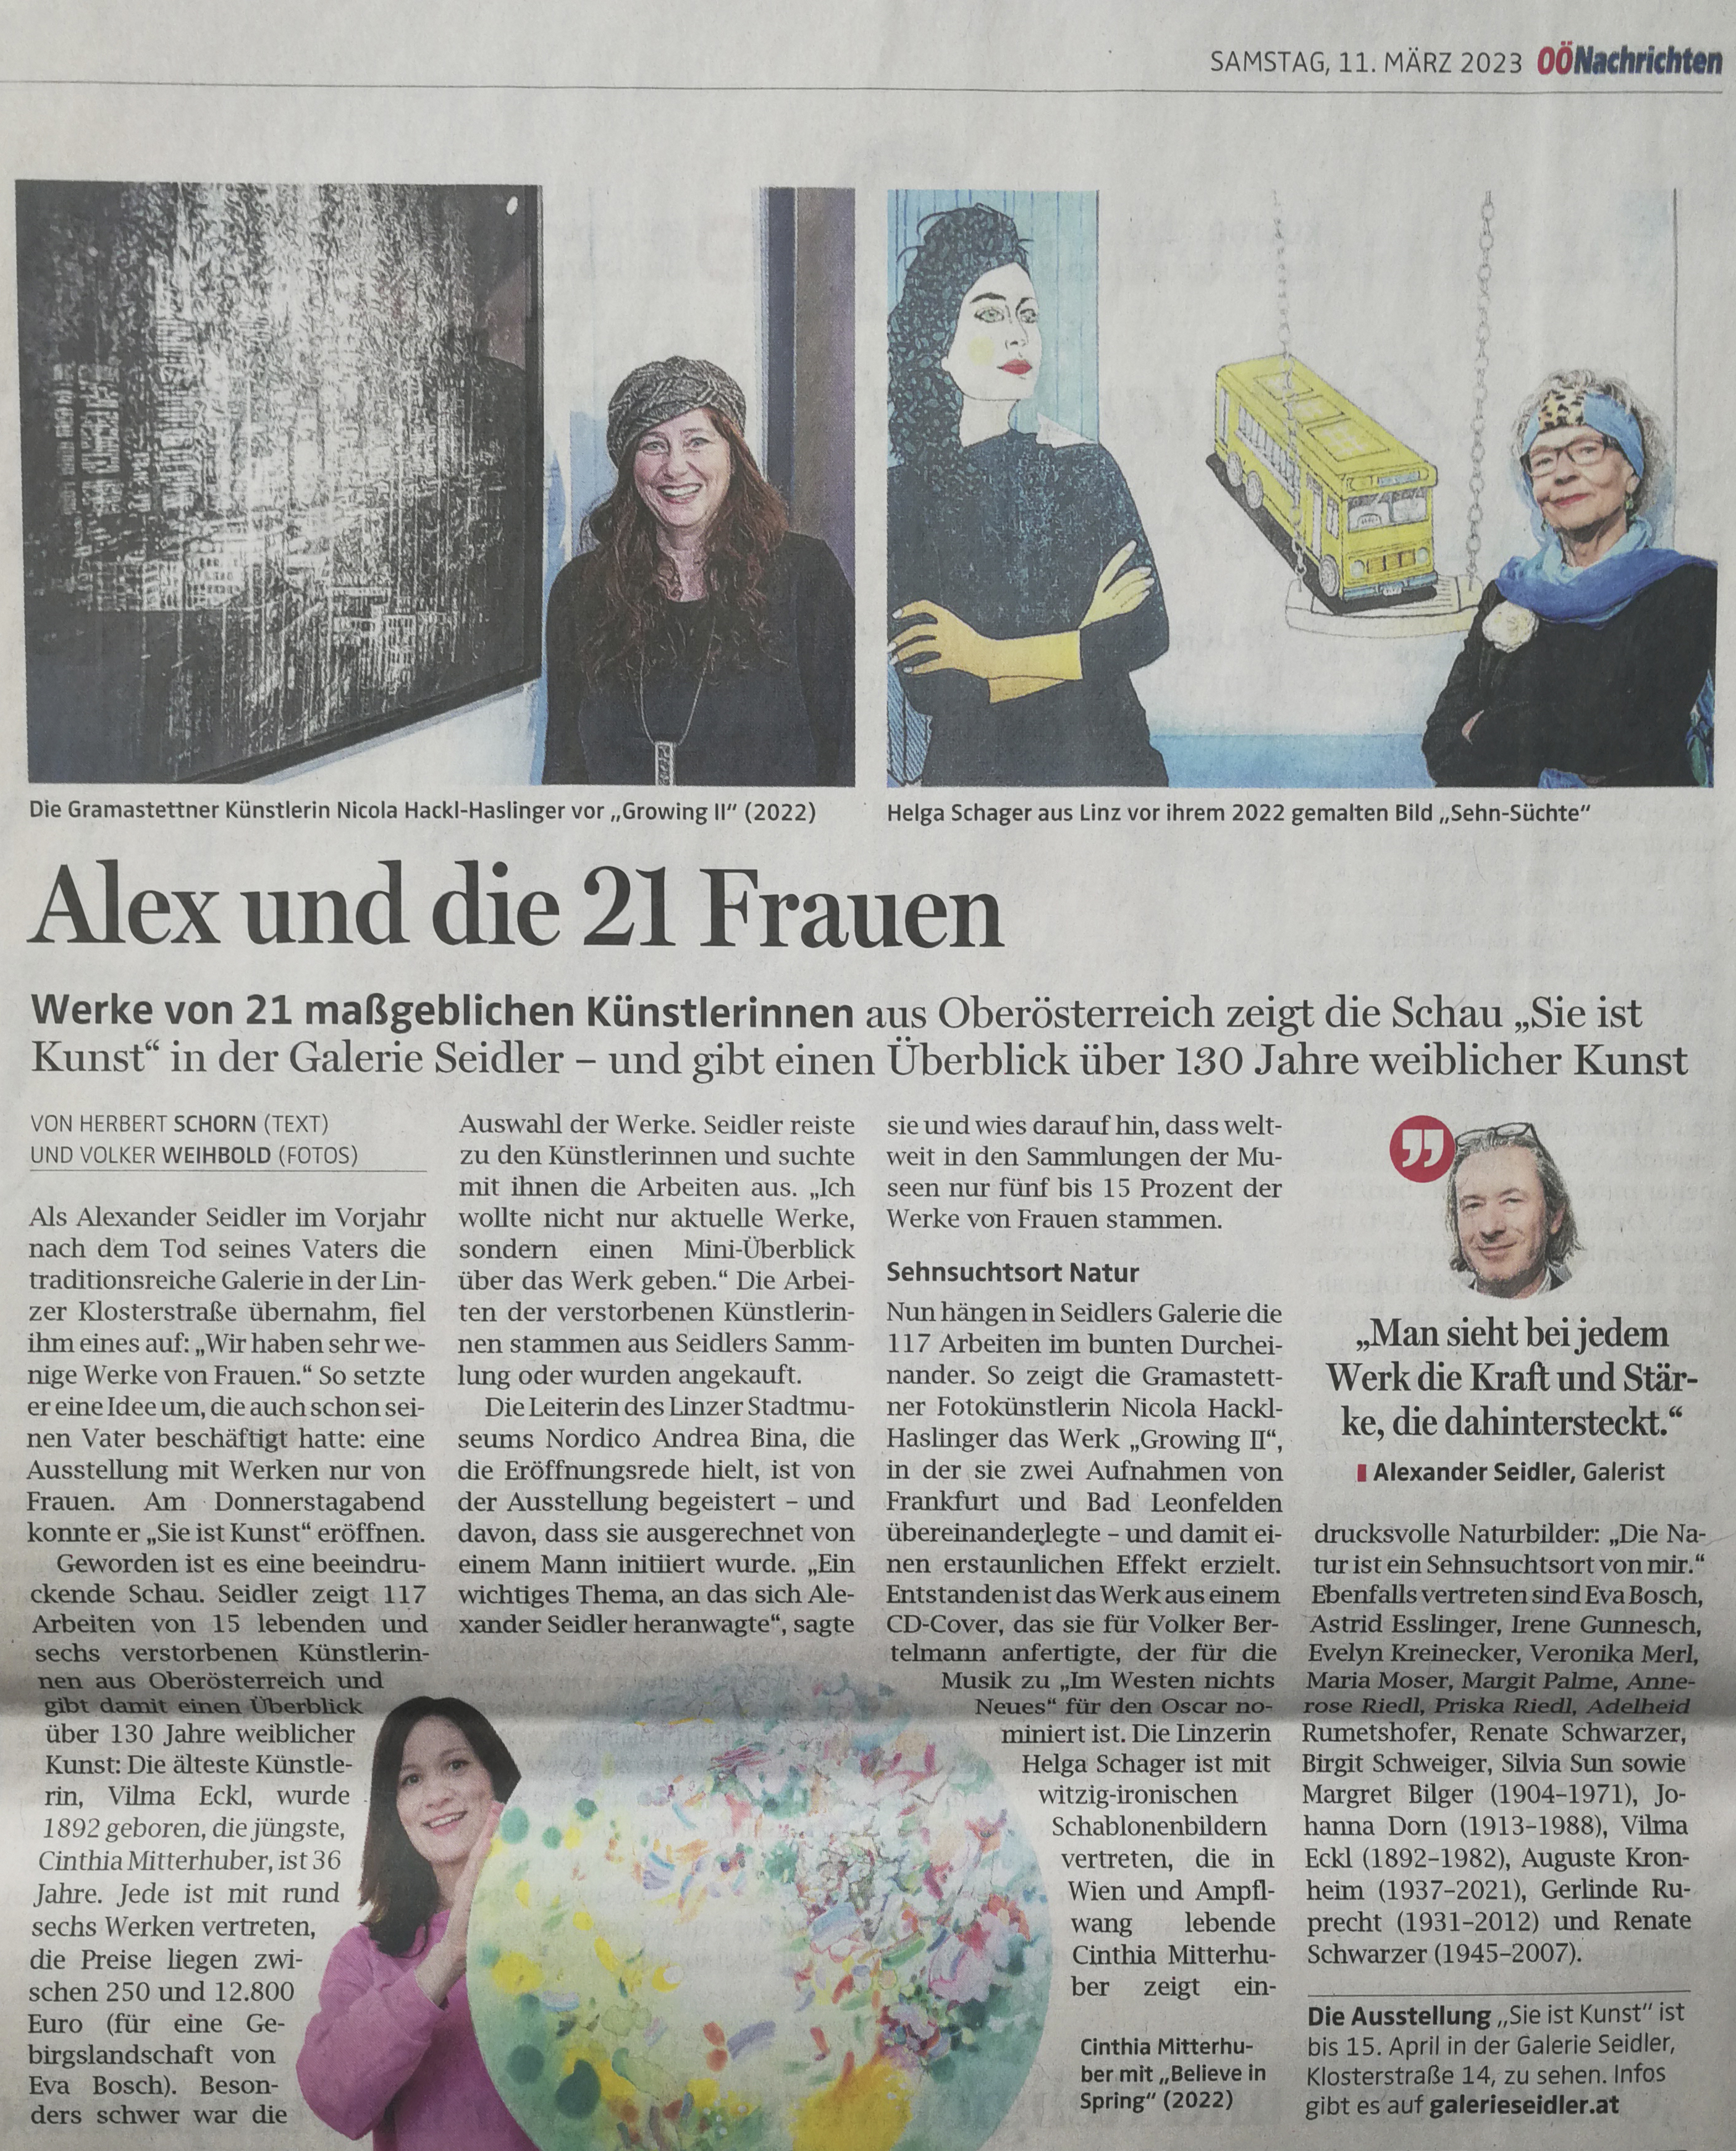 News article in “Oberösterreichische Nachrichten”